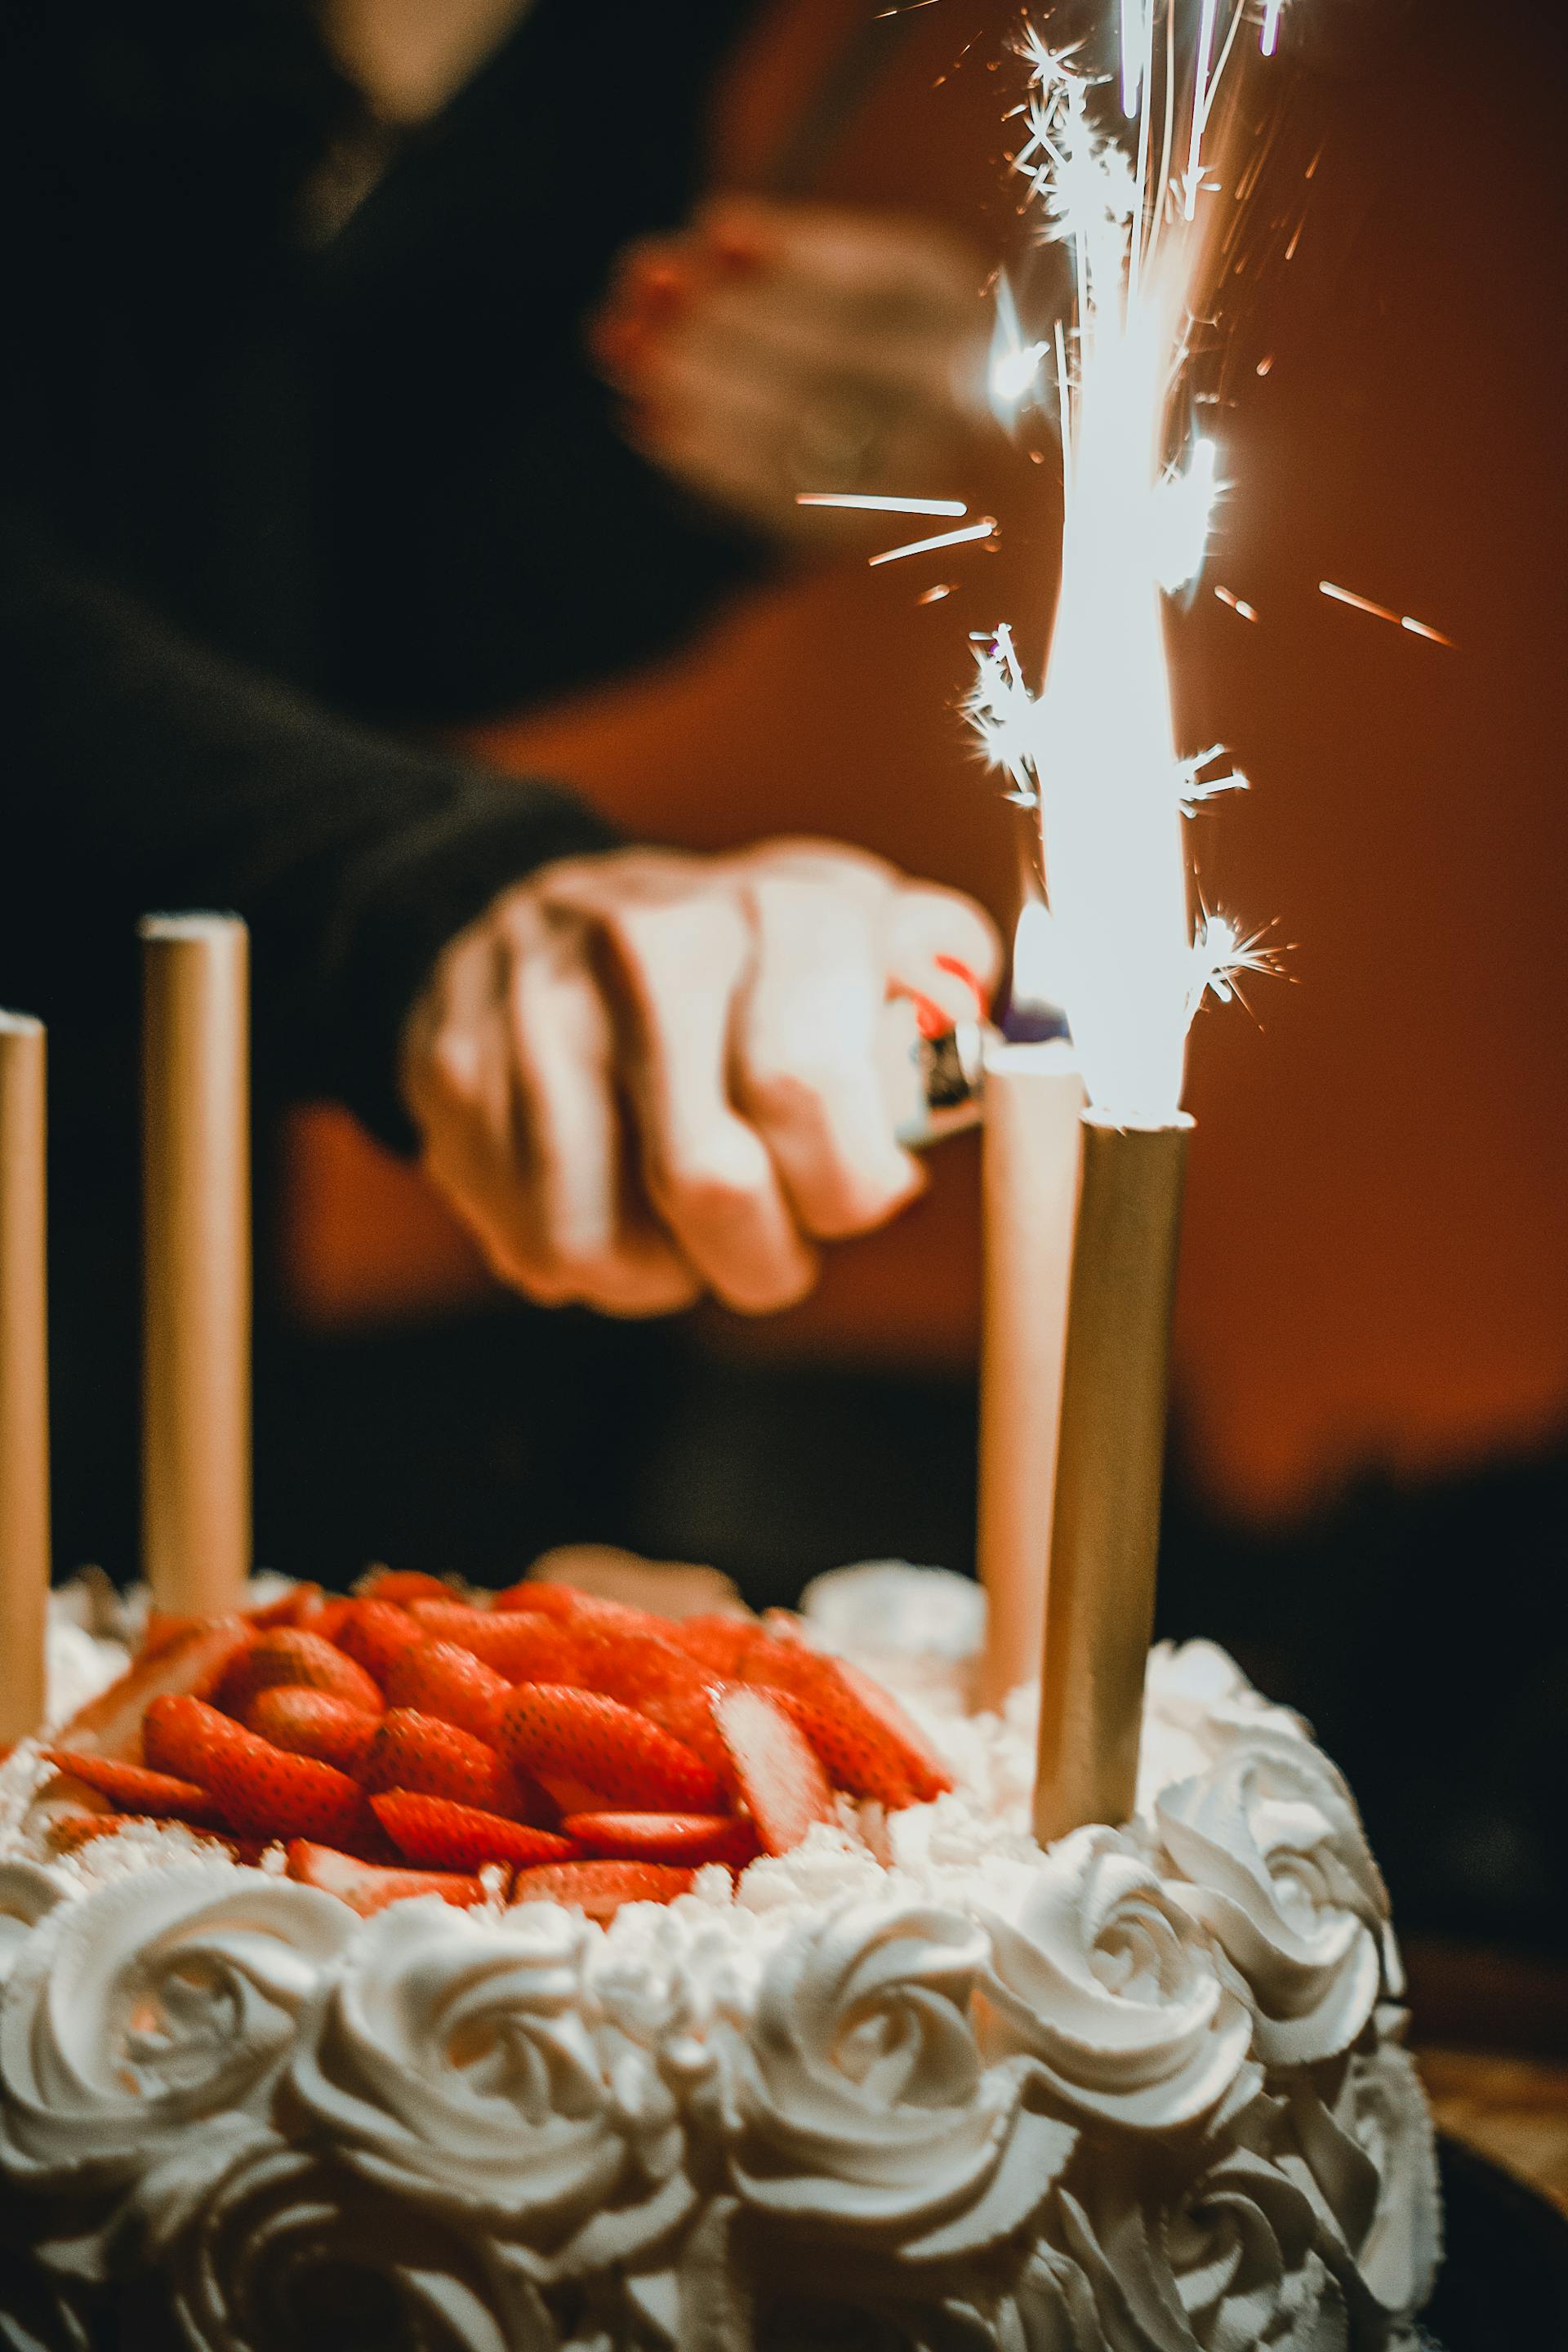 Une personne allumant des cierges magiques sur un gâteau | Source : Pexels